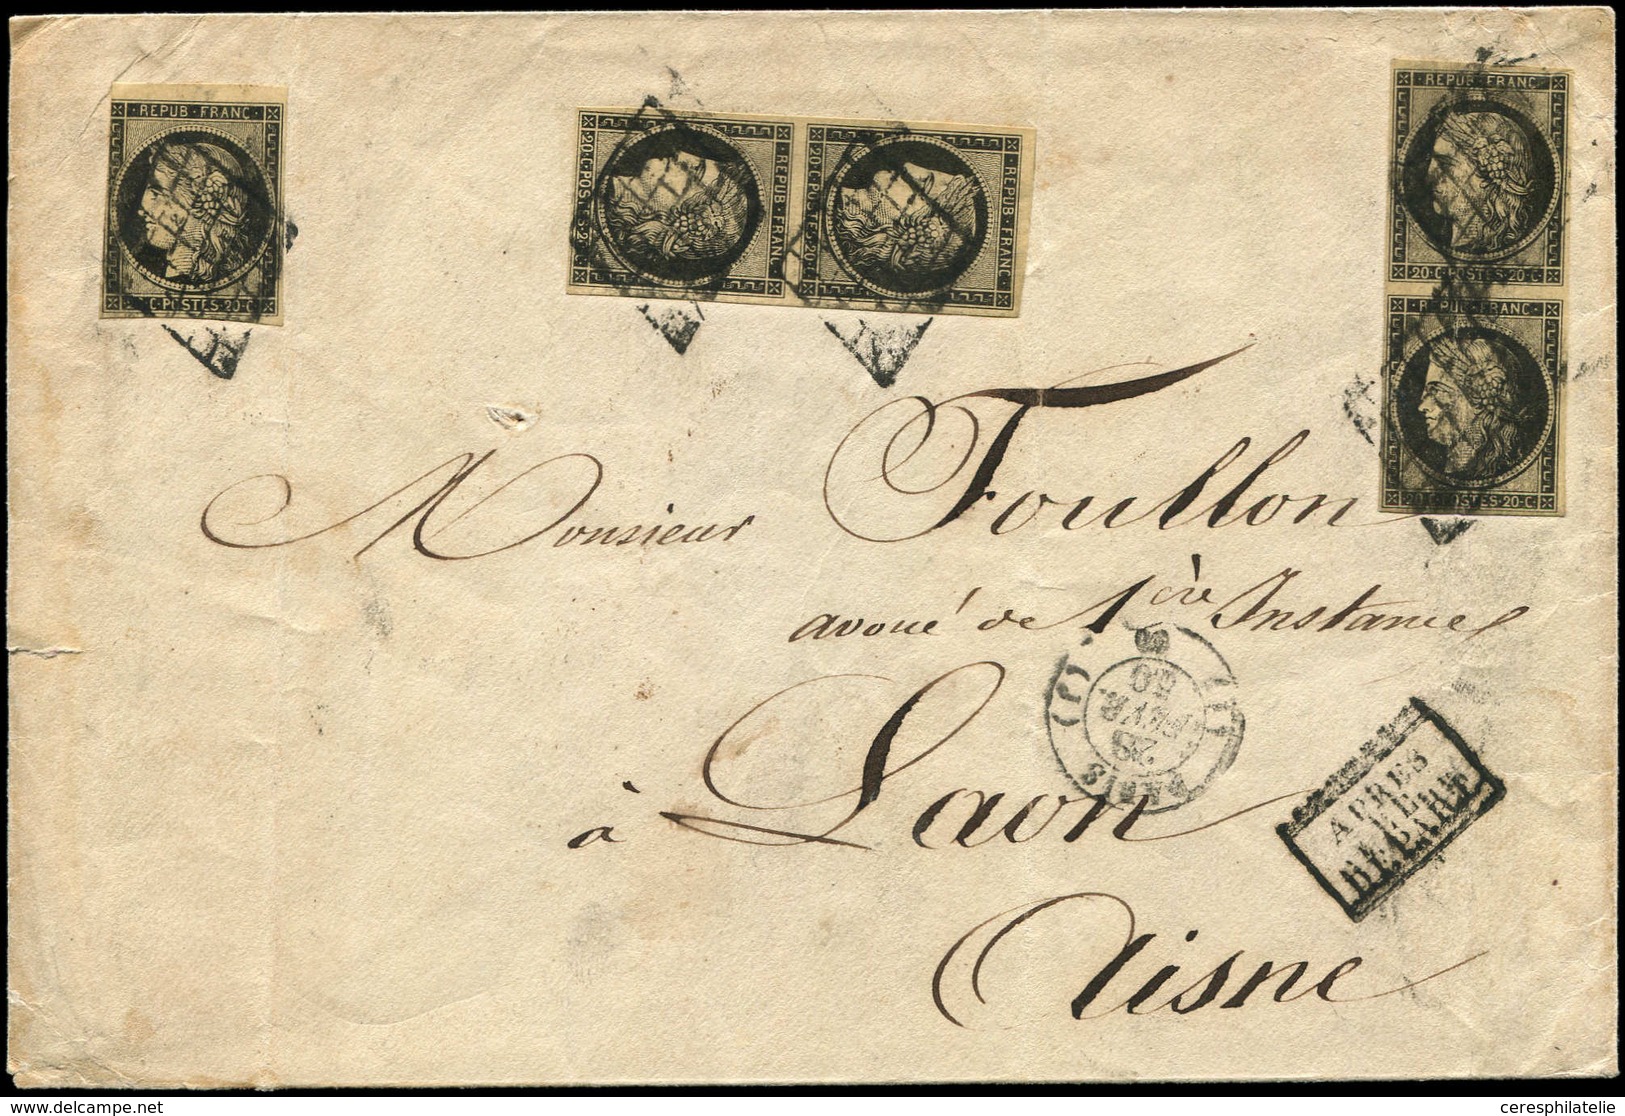 Let EMISSION DE 1849 - 3    20c. Noir Sur Jaune, 2 PAIRES + 1 Ex. Obl. GRILLE S. Env., Càd (J) PARIS (J) 28/2/50, 3 T. A - 1849-1850 Cérès